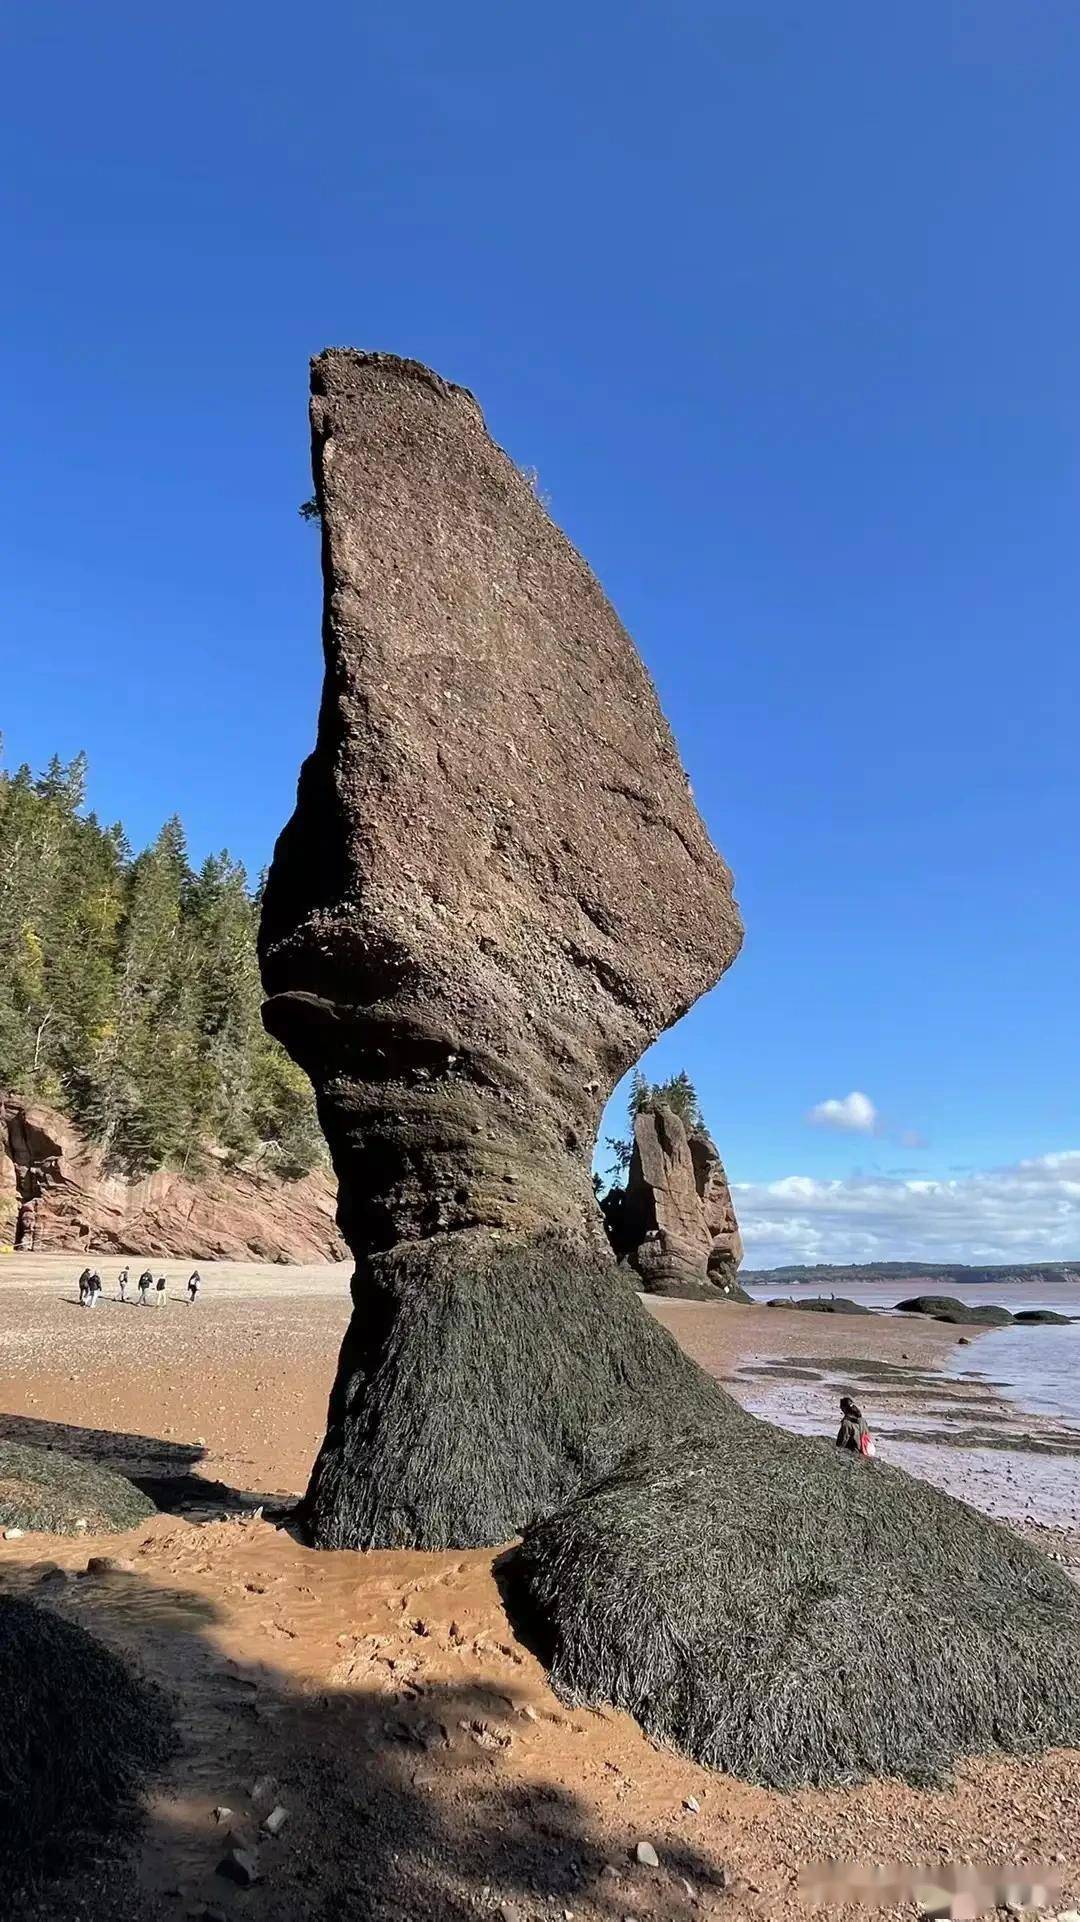 形状特异的岩石,怎么样拍出来效果好?你有好的建议吗?